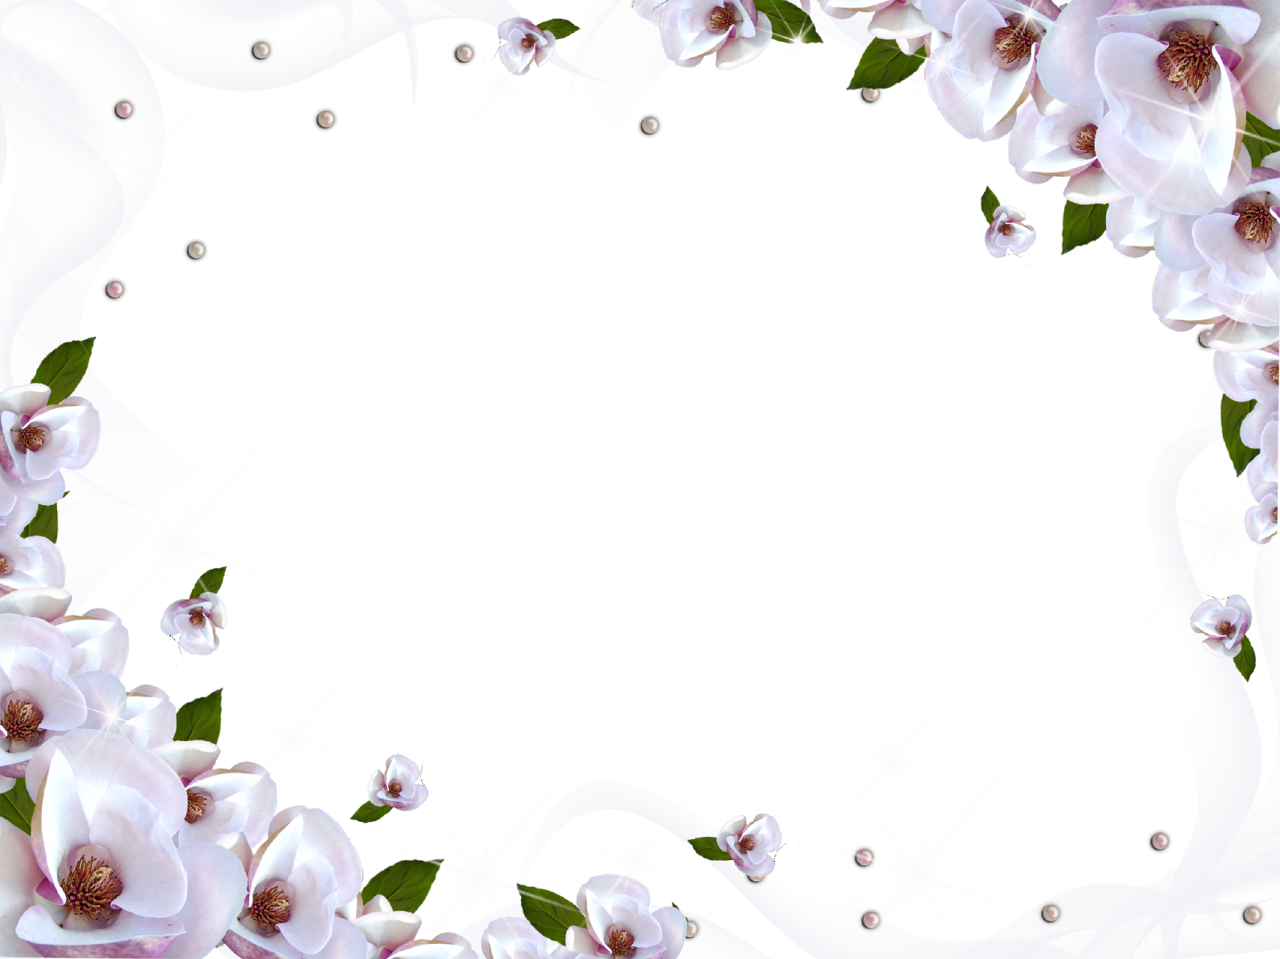 Download White Flower Frame Image HQ PNG Image | FreePNGImg